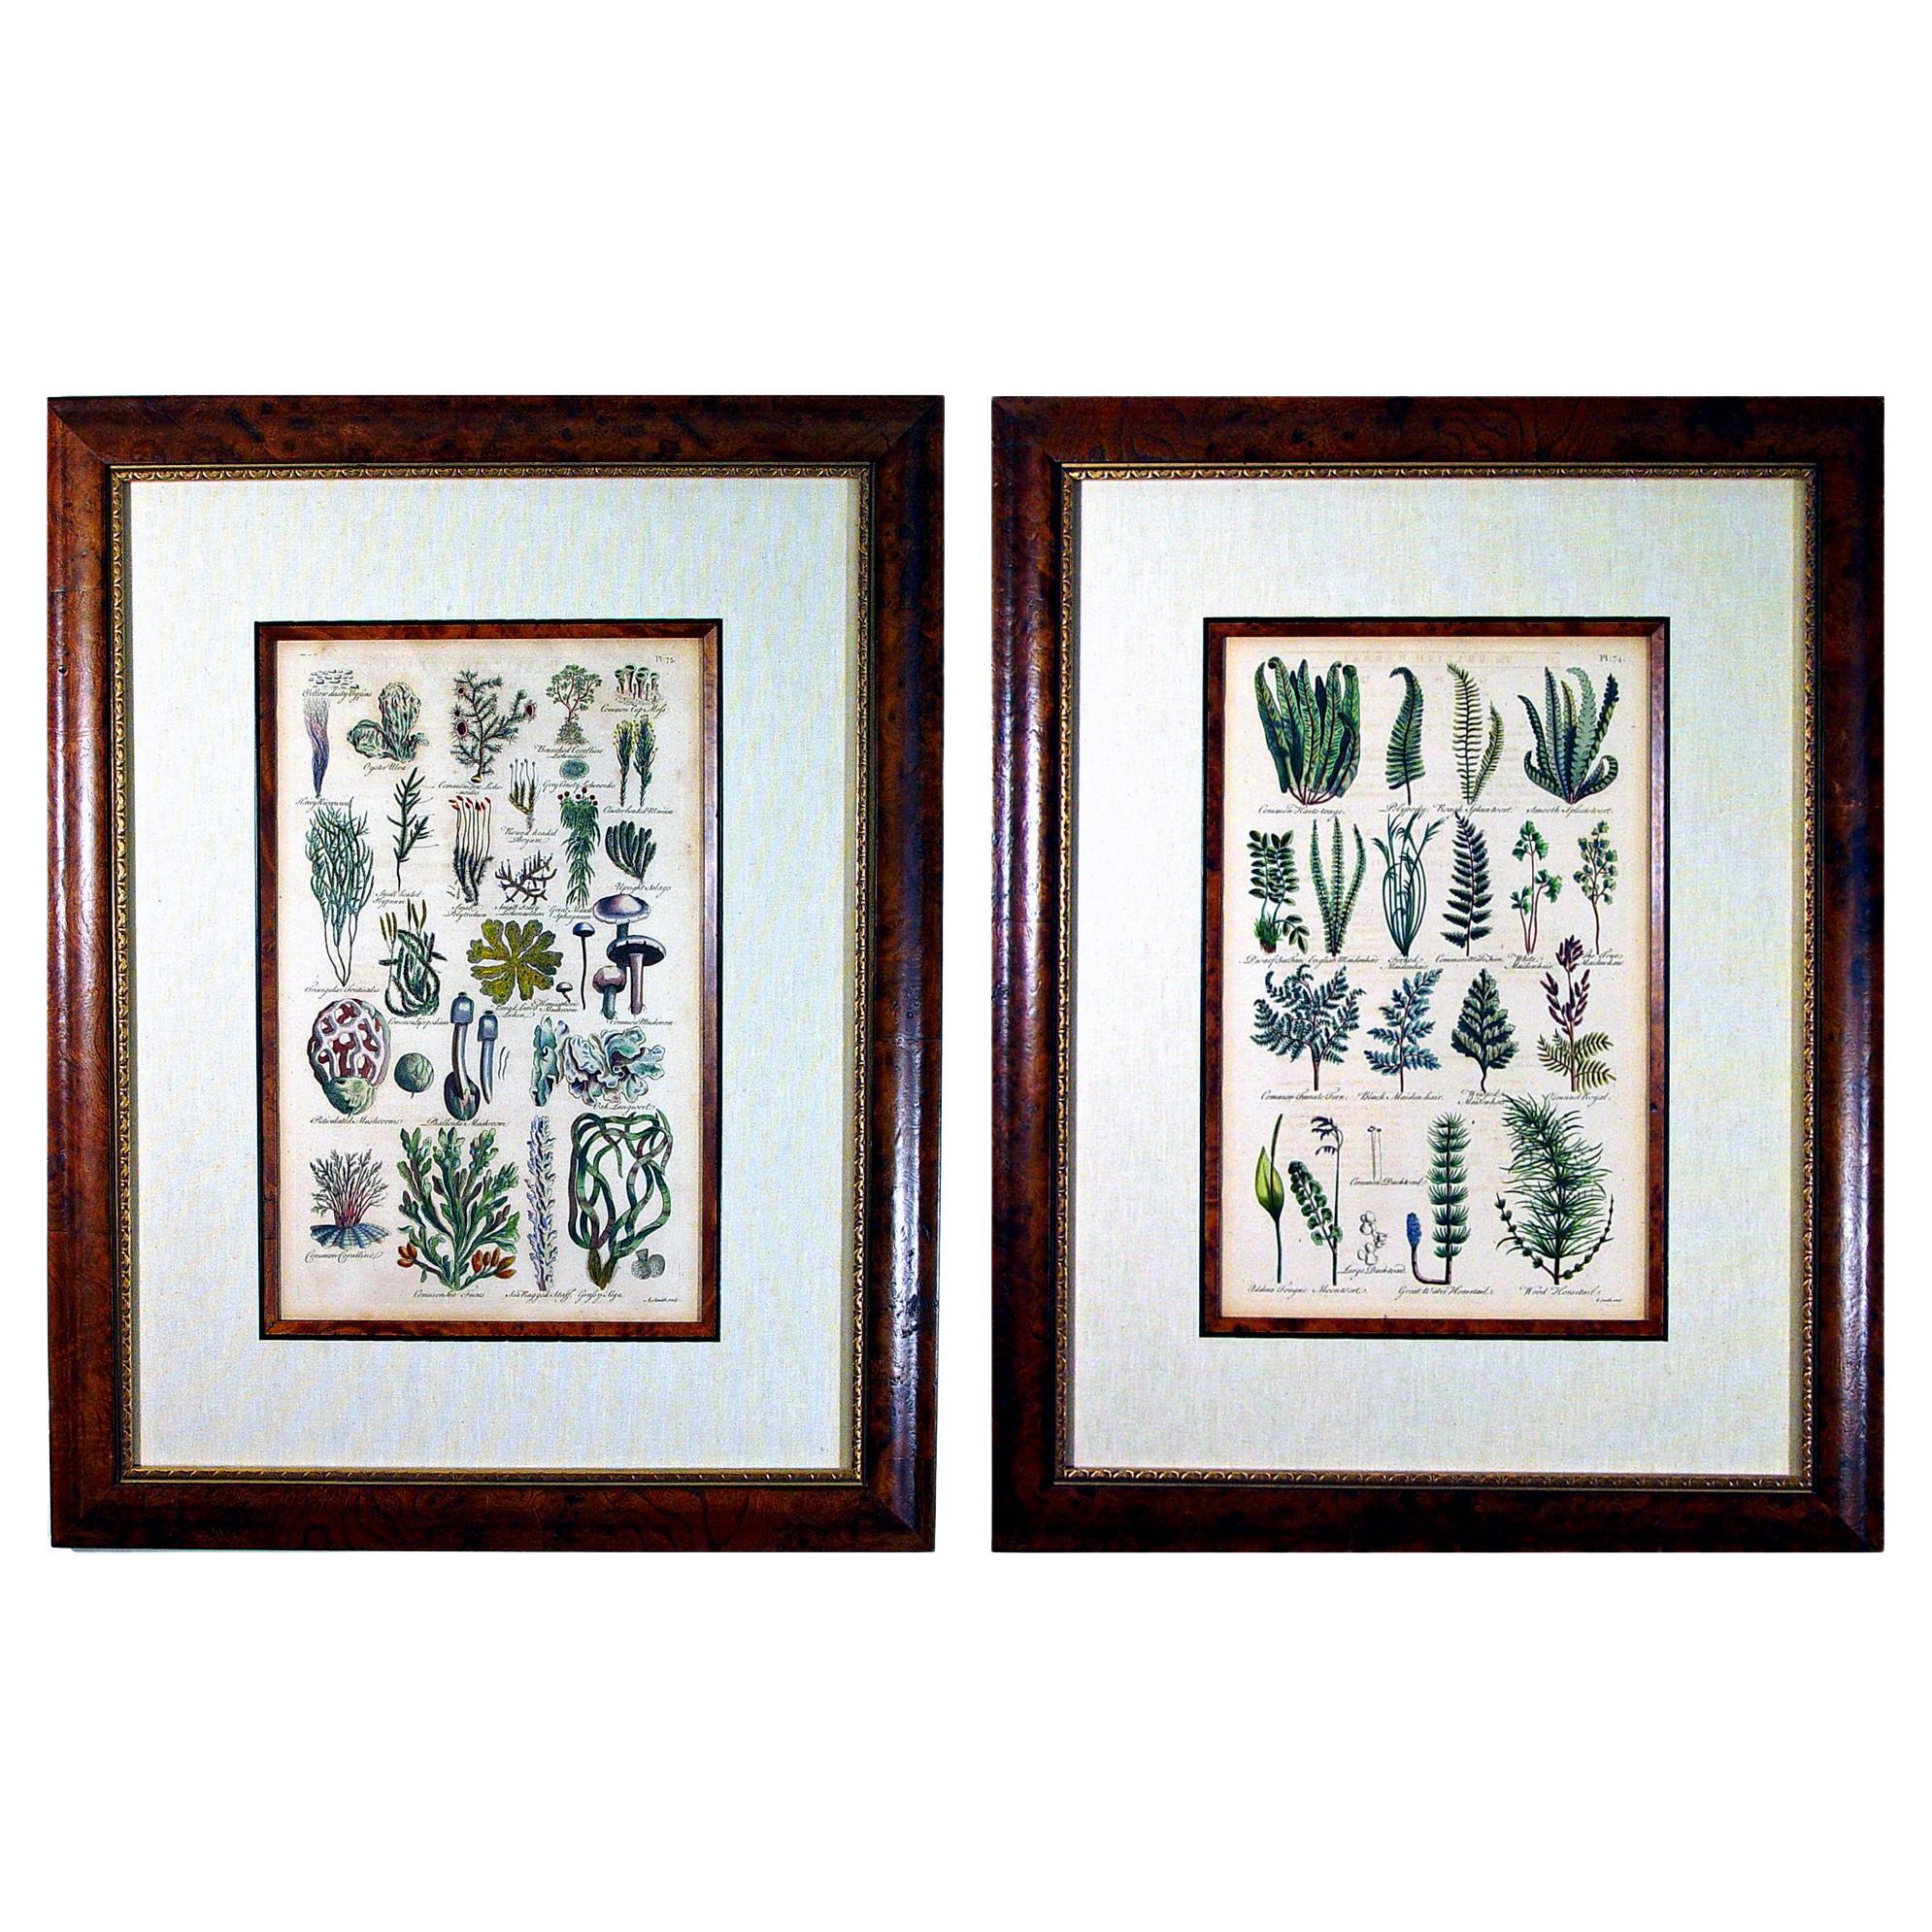 Botanicale Gravuren von Moosen und Fernen aus dem 17. Jahrhundert von John Parkinson